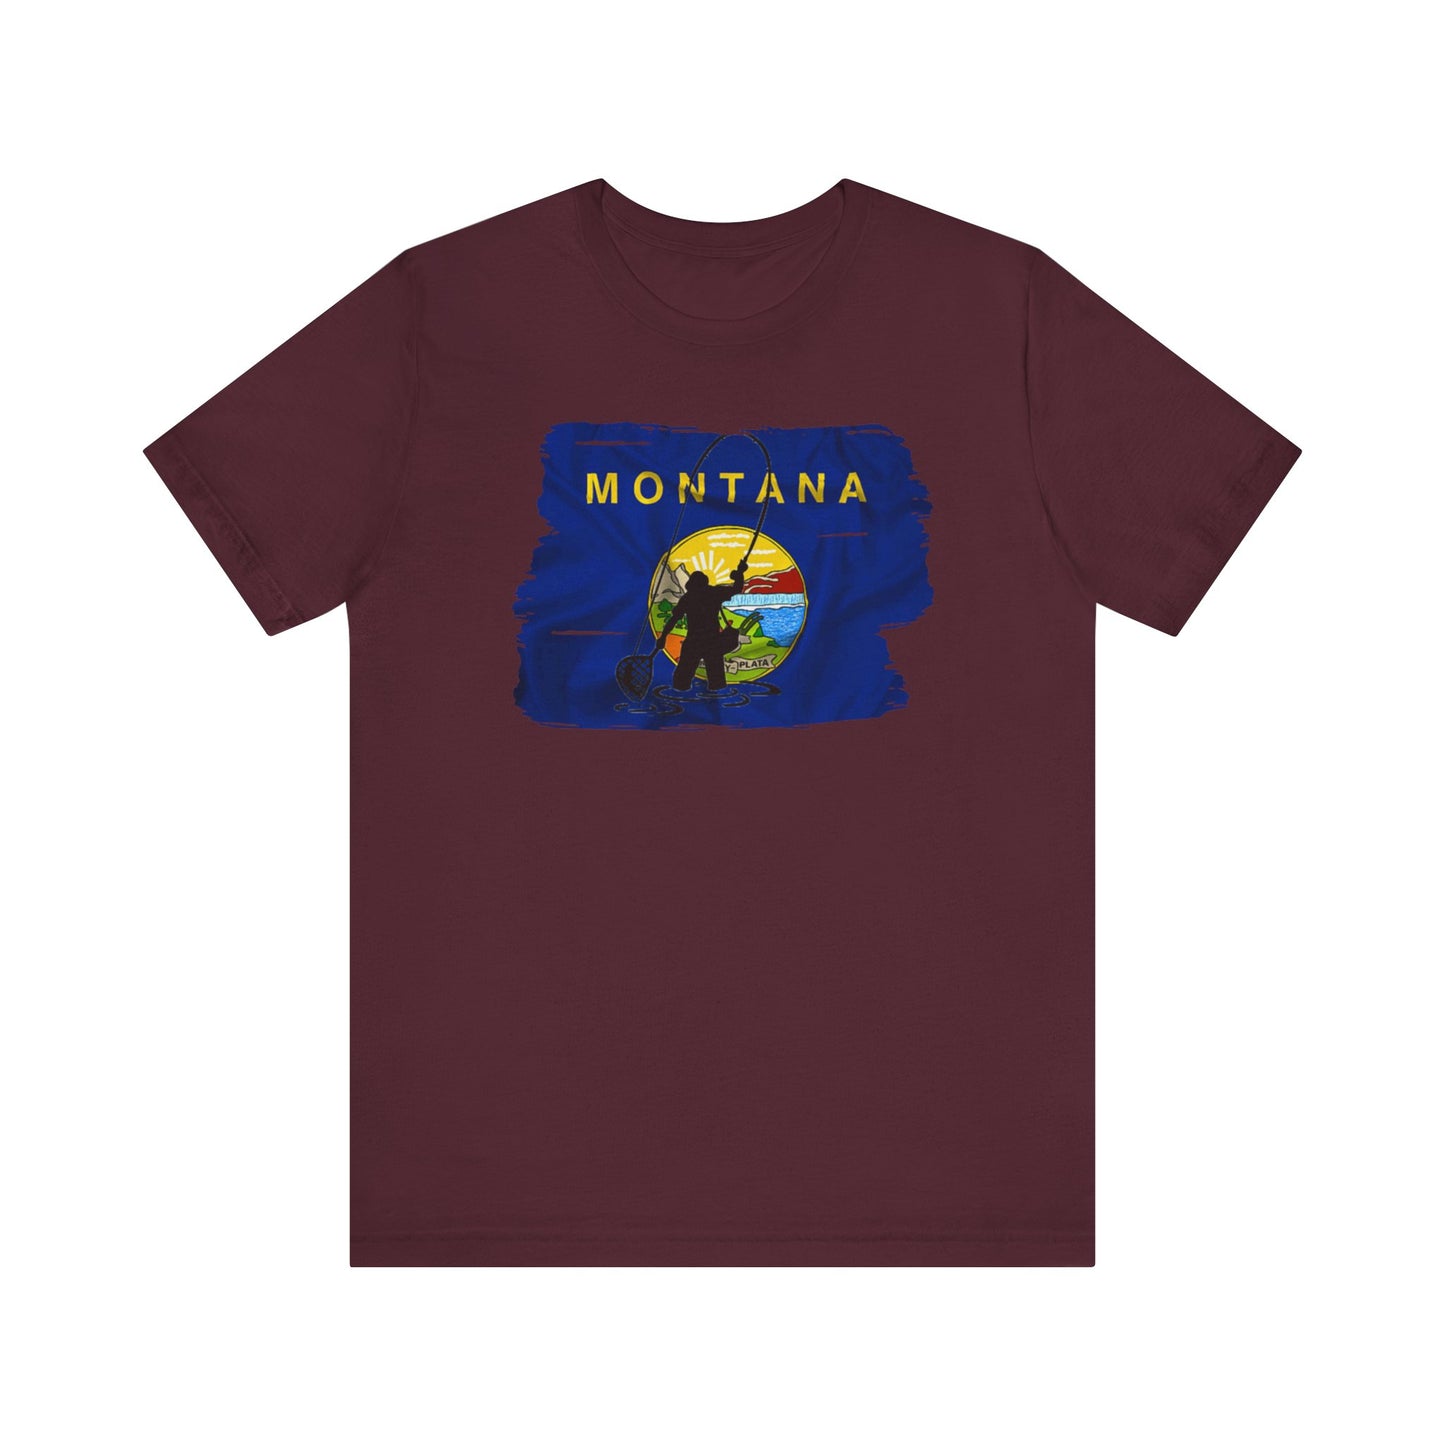 Montana Flyfishing T-shirt, Montana Fishing Shirt